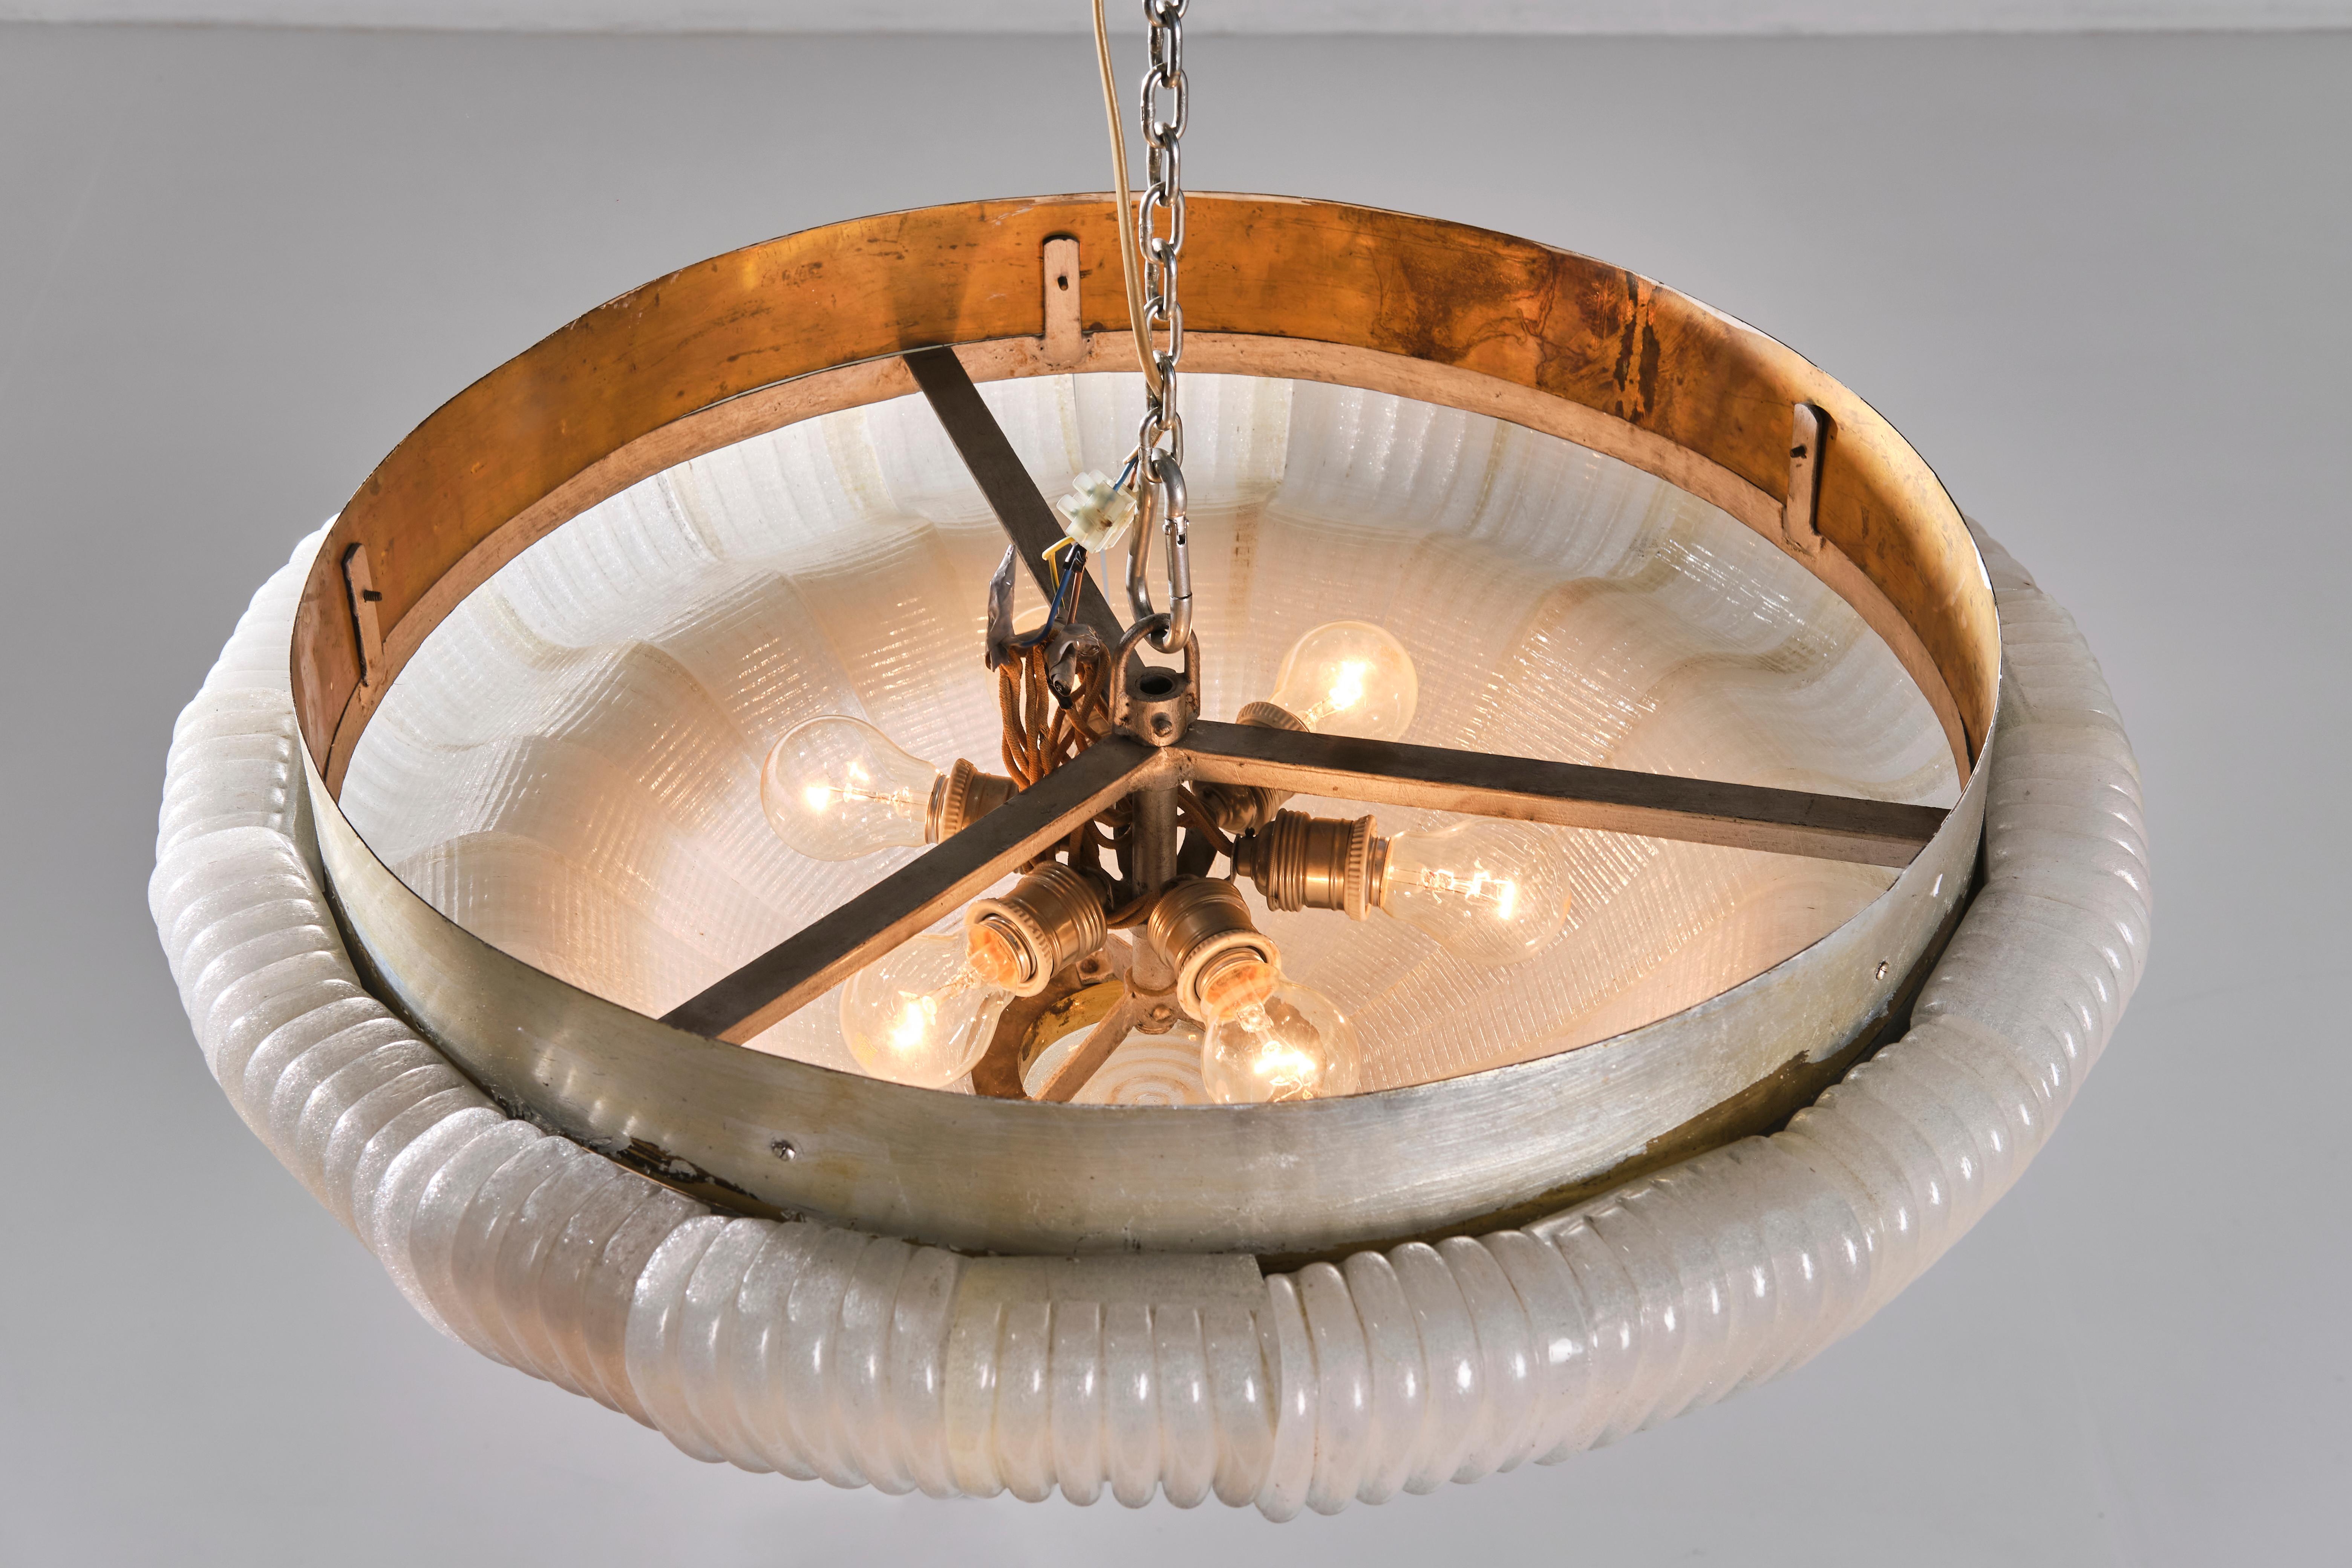 Venini 1940s Ceiling Lamp, Murano Cordonato Glass and Brass, Italian Design For Sale 4